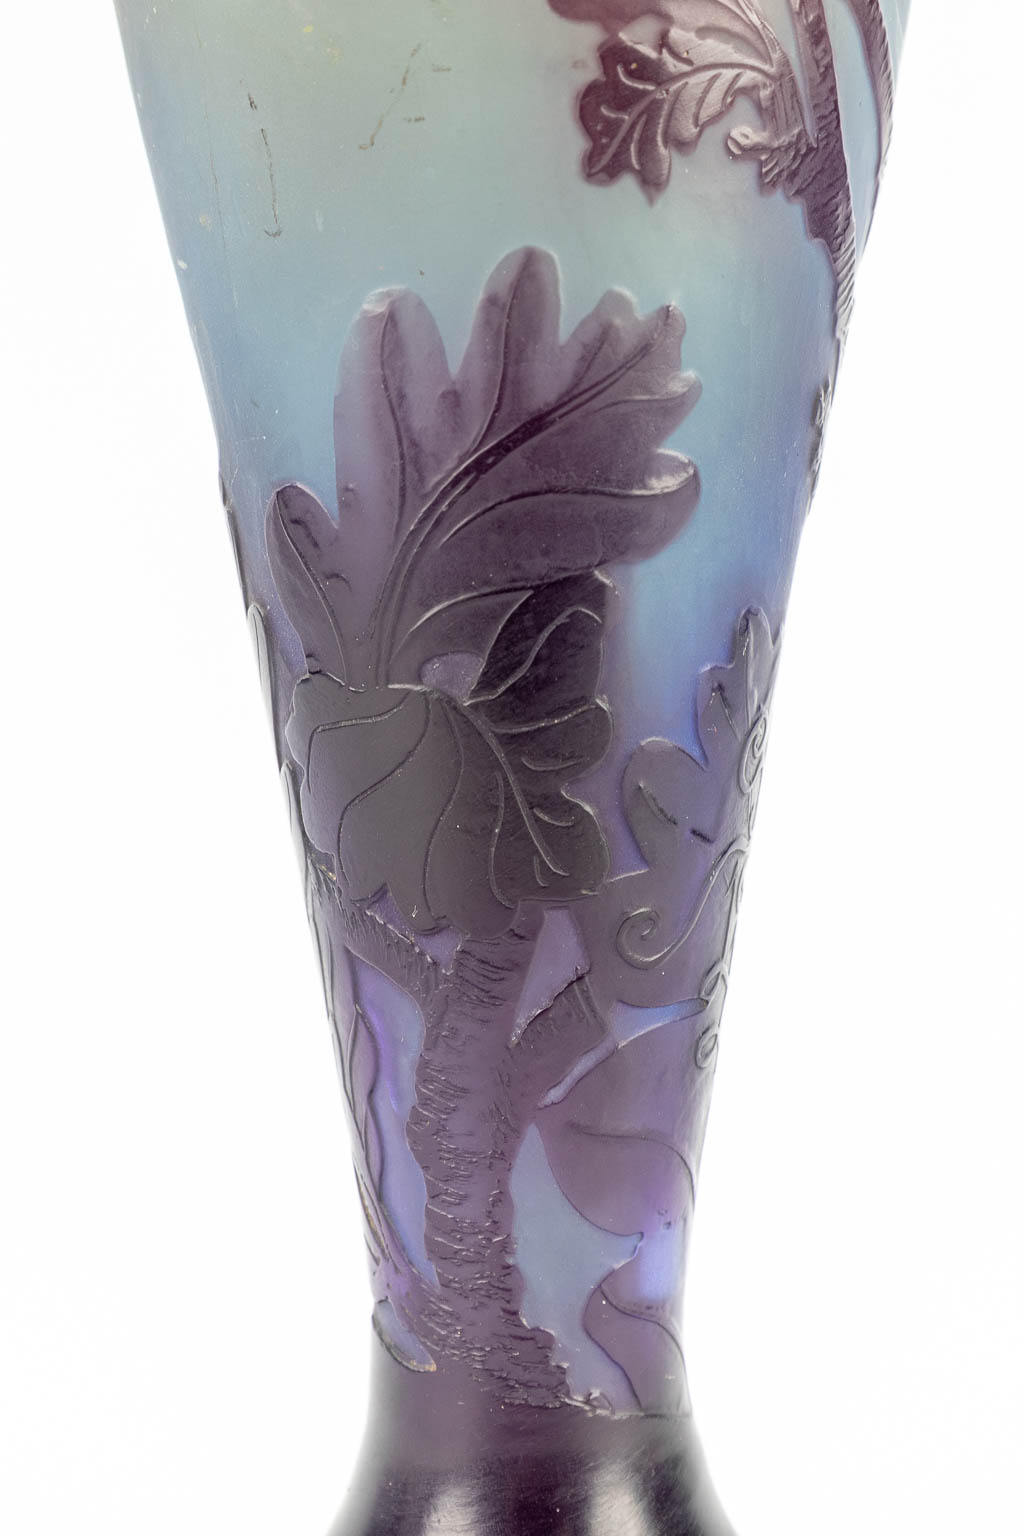 Émile GALLÉ (1846-1904) 'Lampenvoet' gemaakt uit pate de verre glas. (37cm)